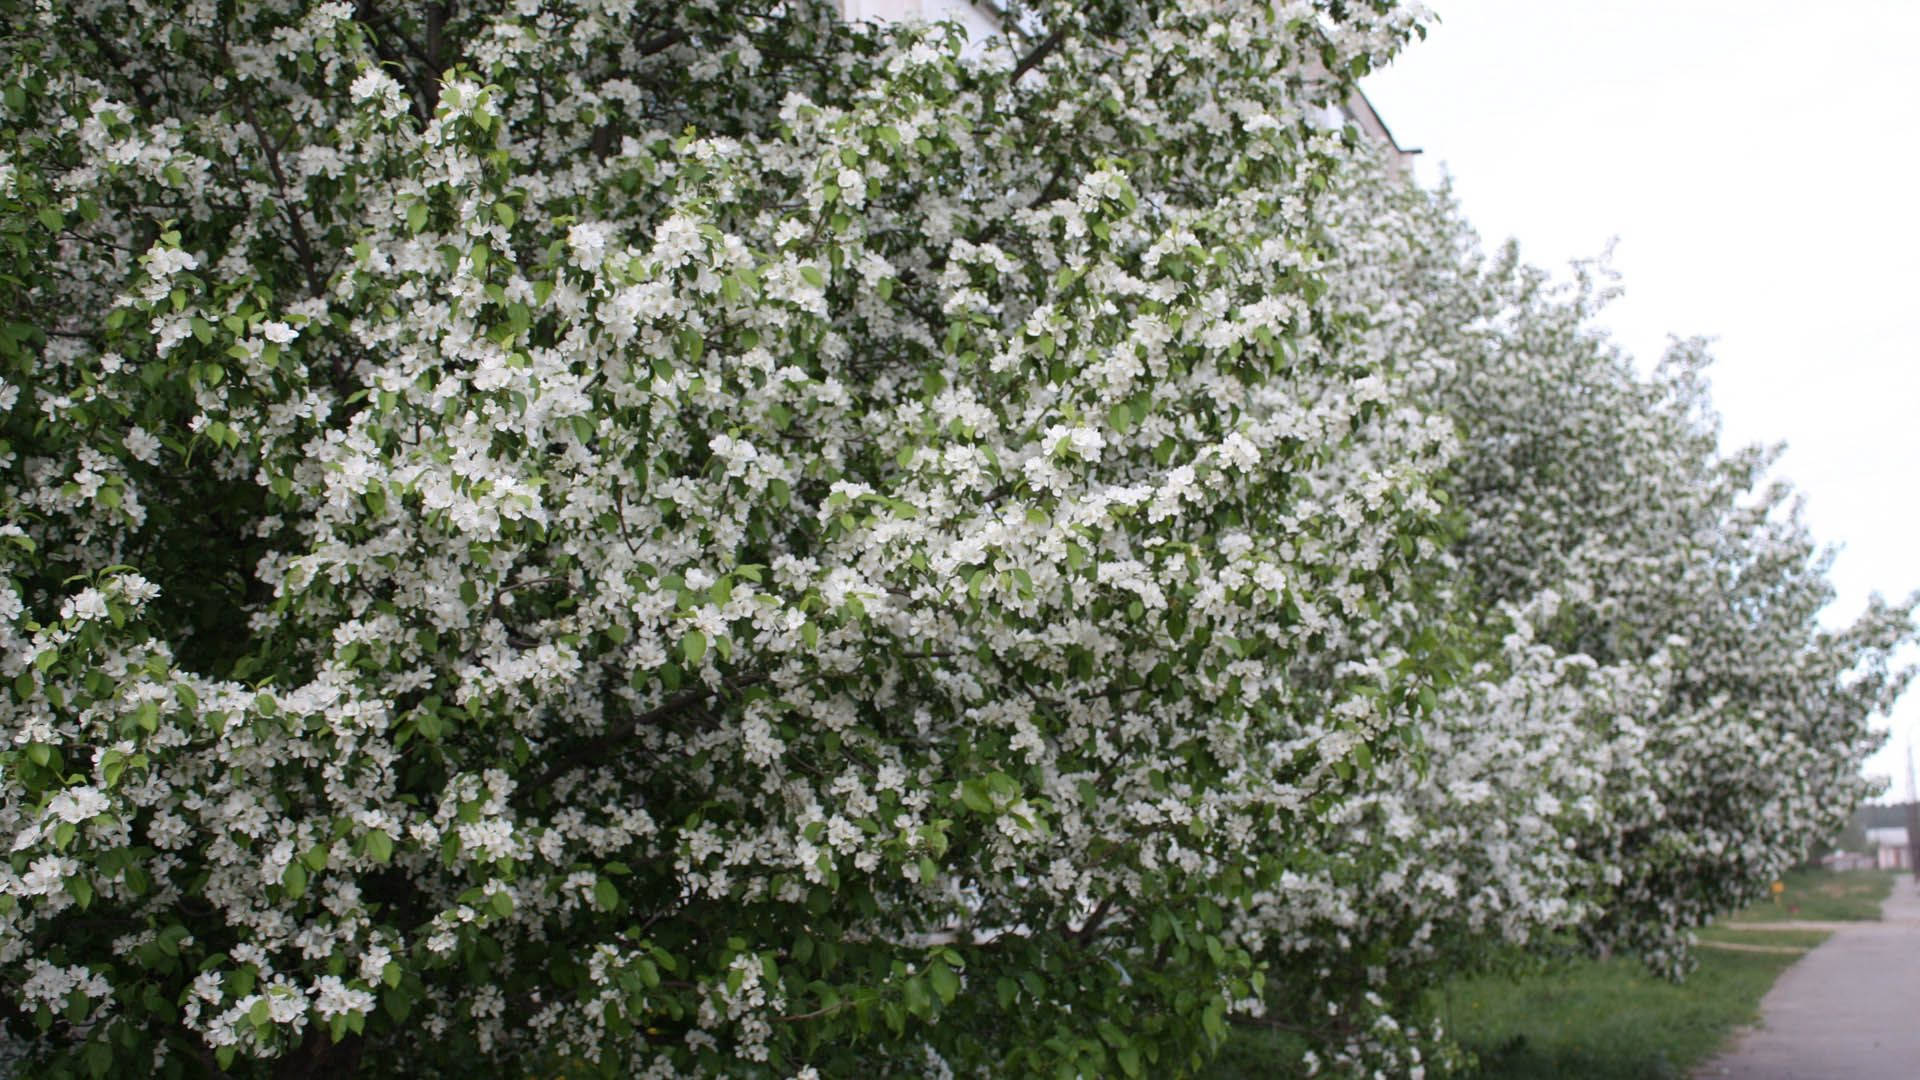 Flowering Spring Trees